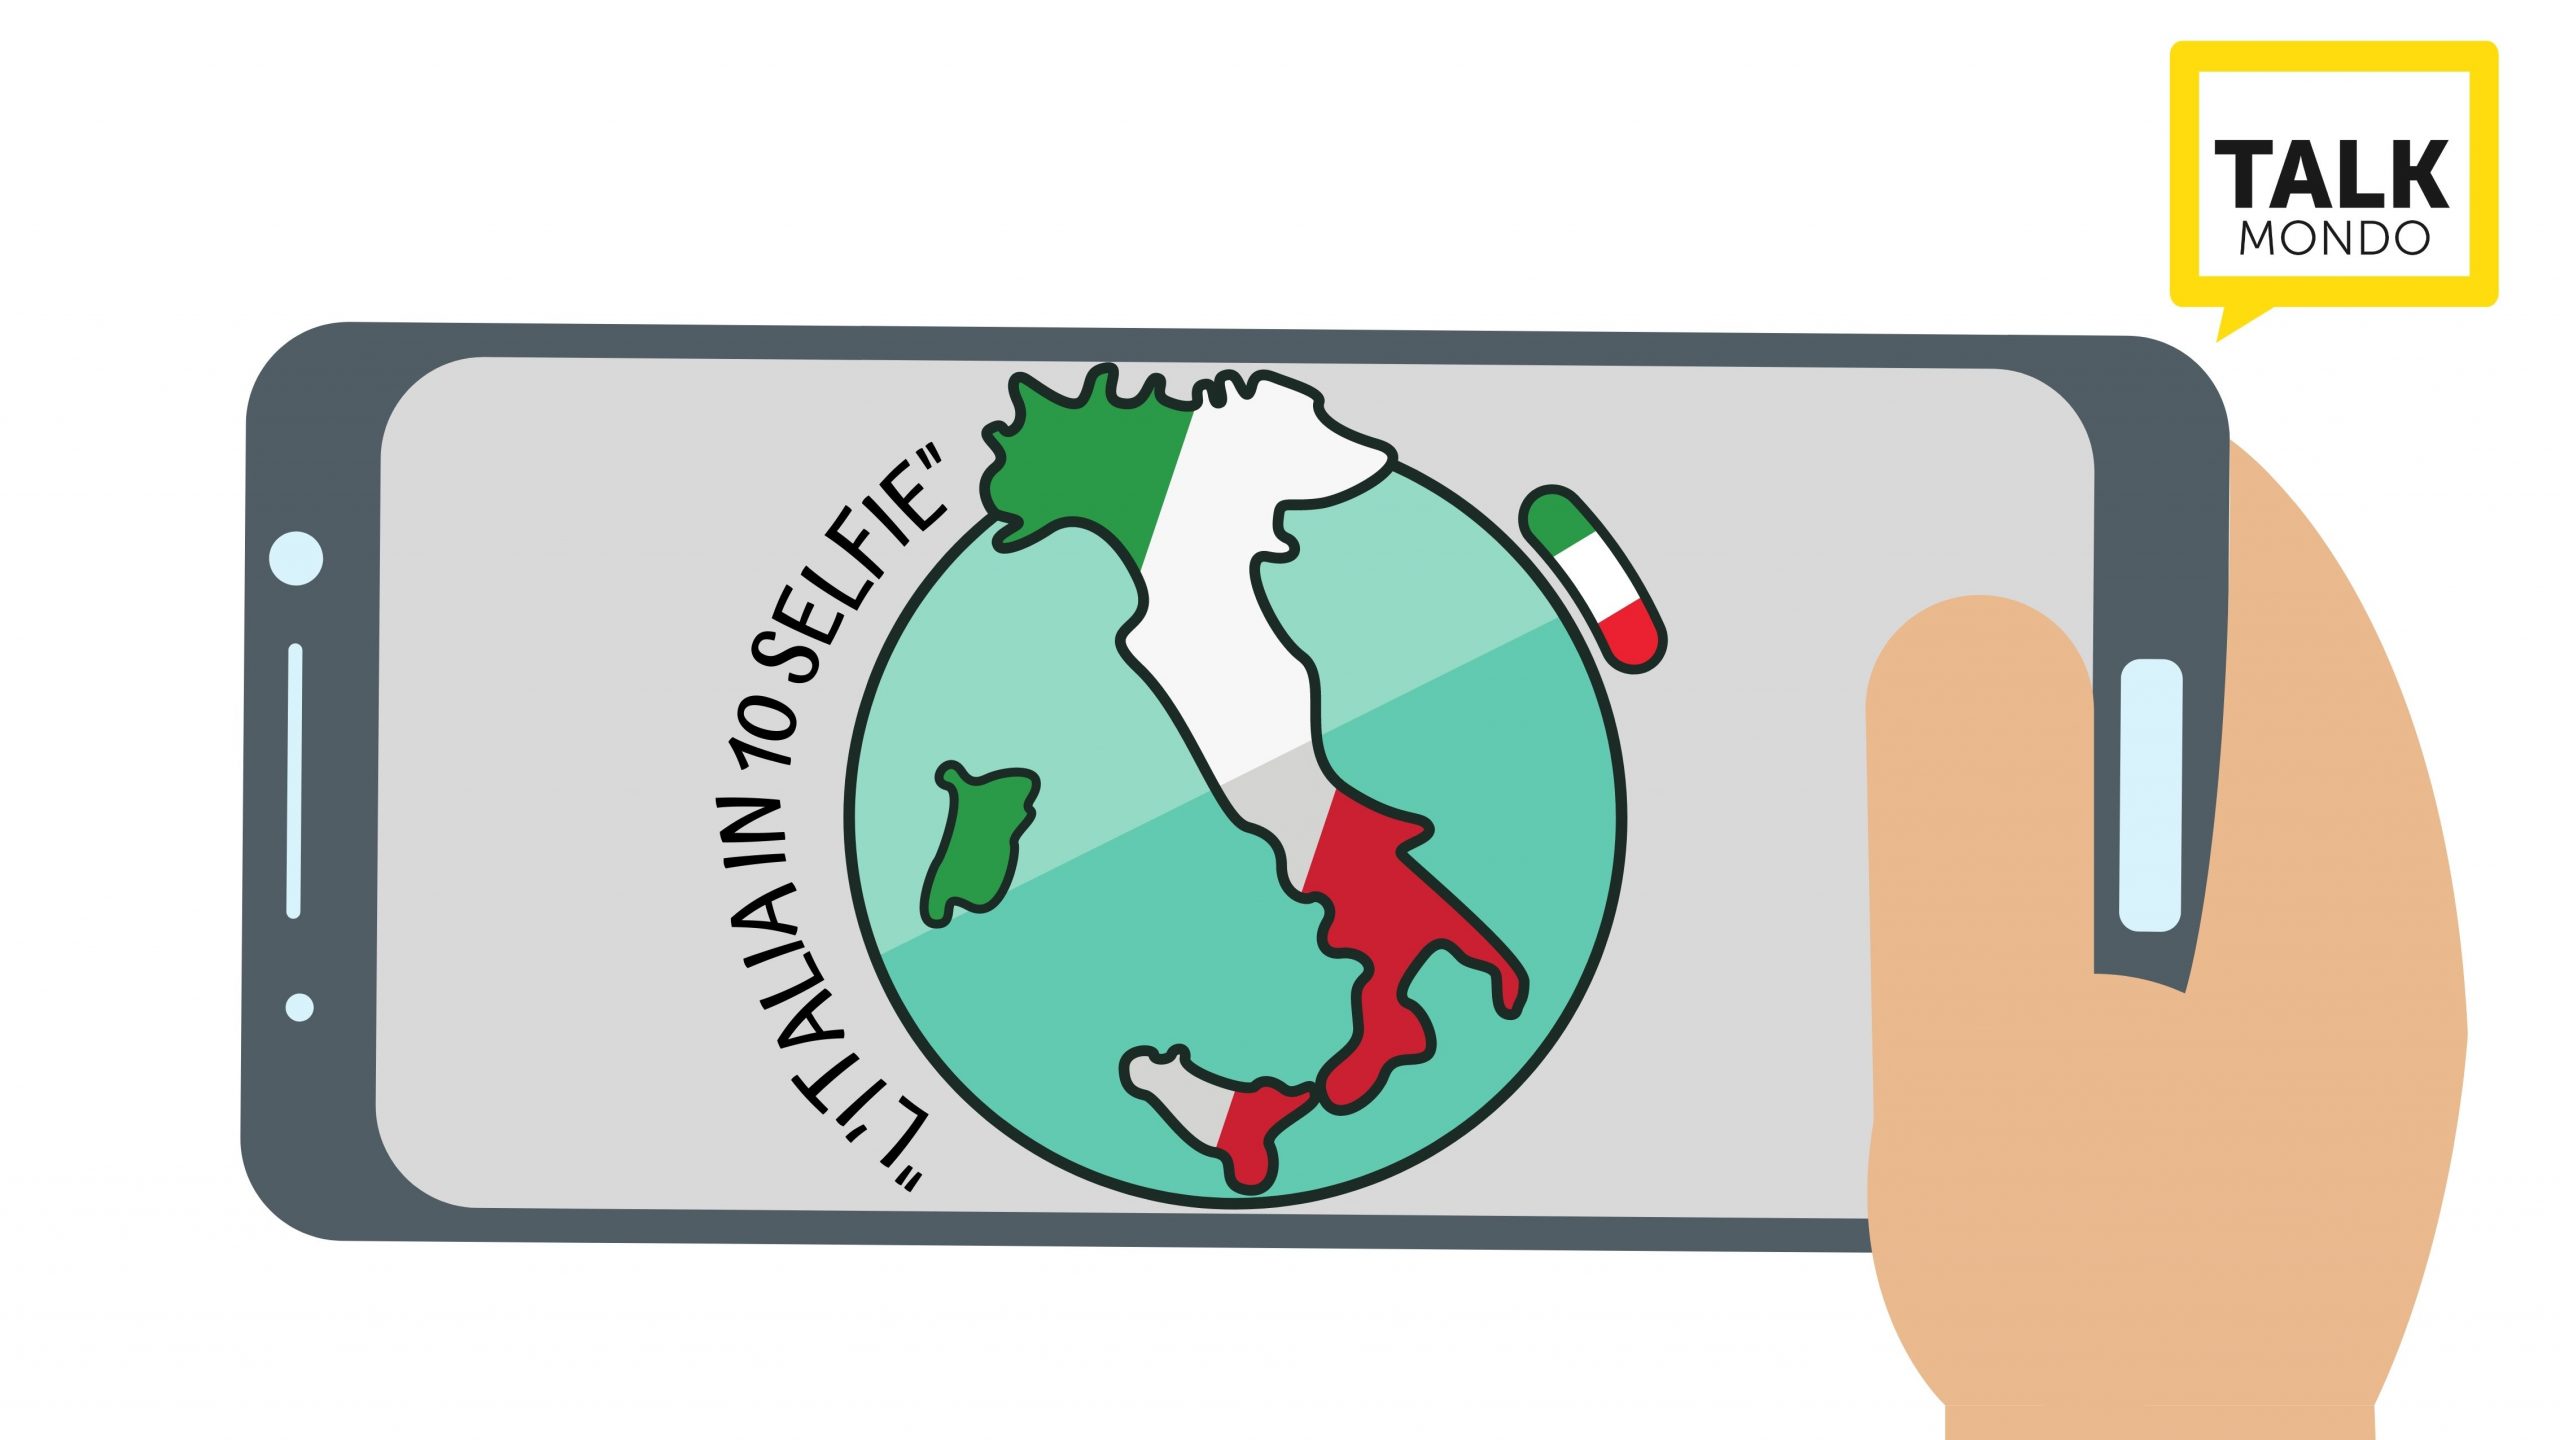 L’ITALIA IN 10 SELFIE